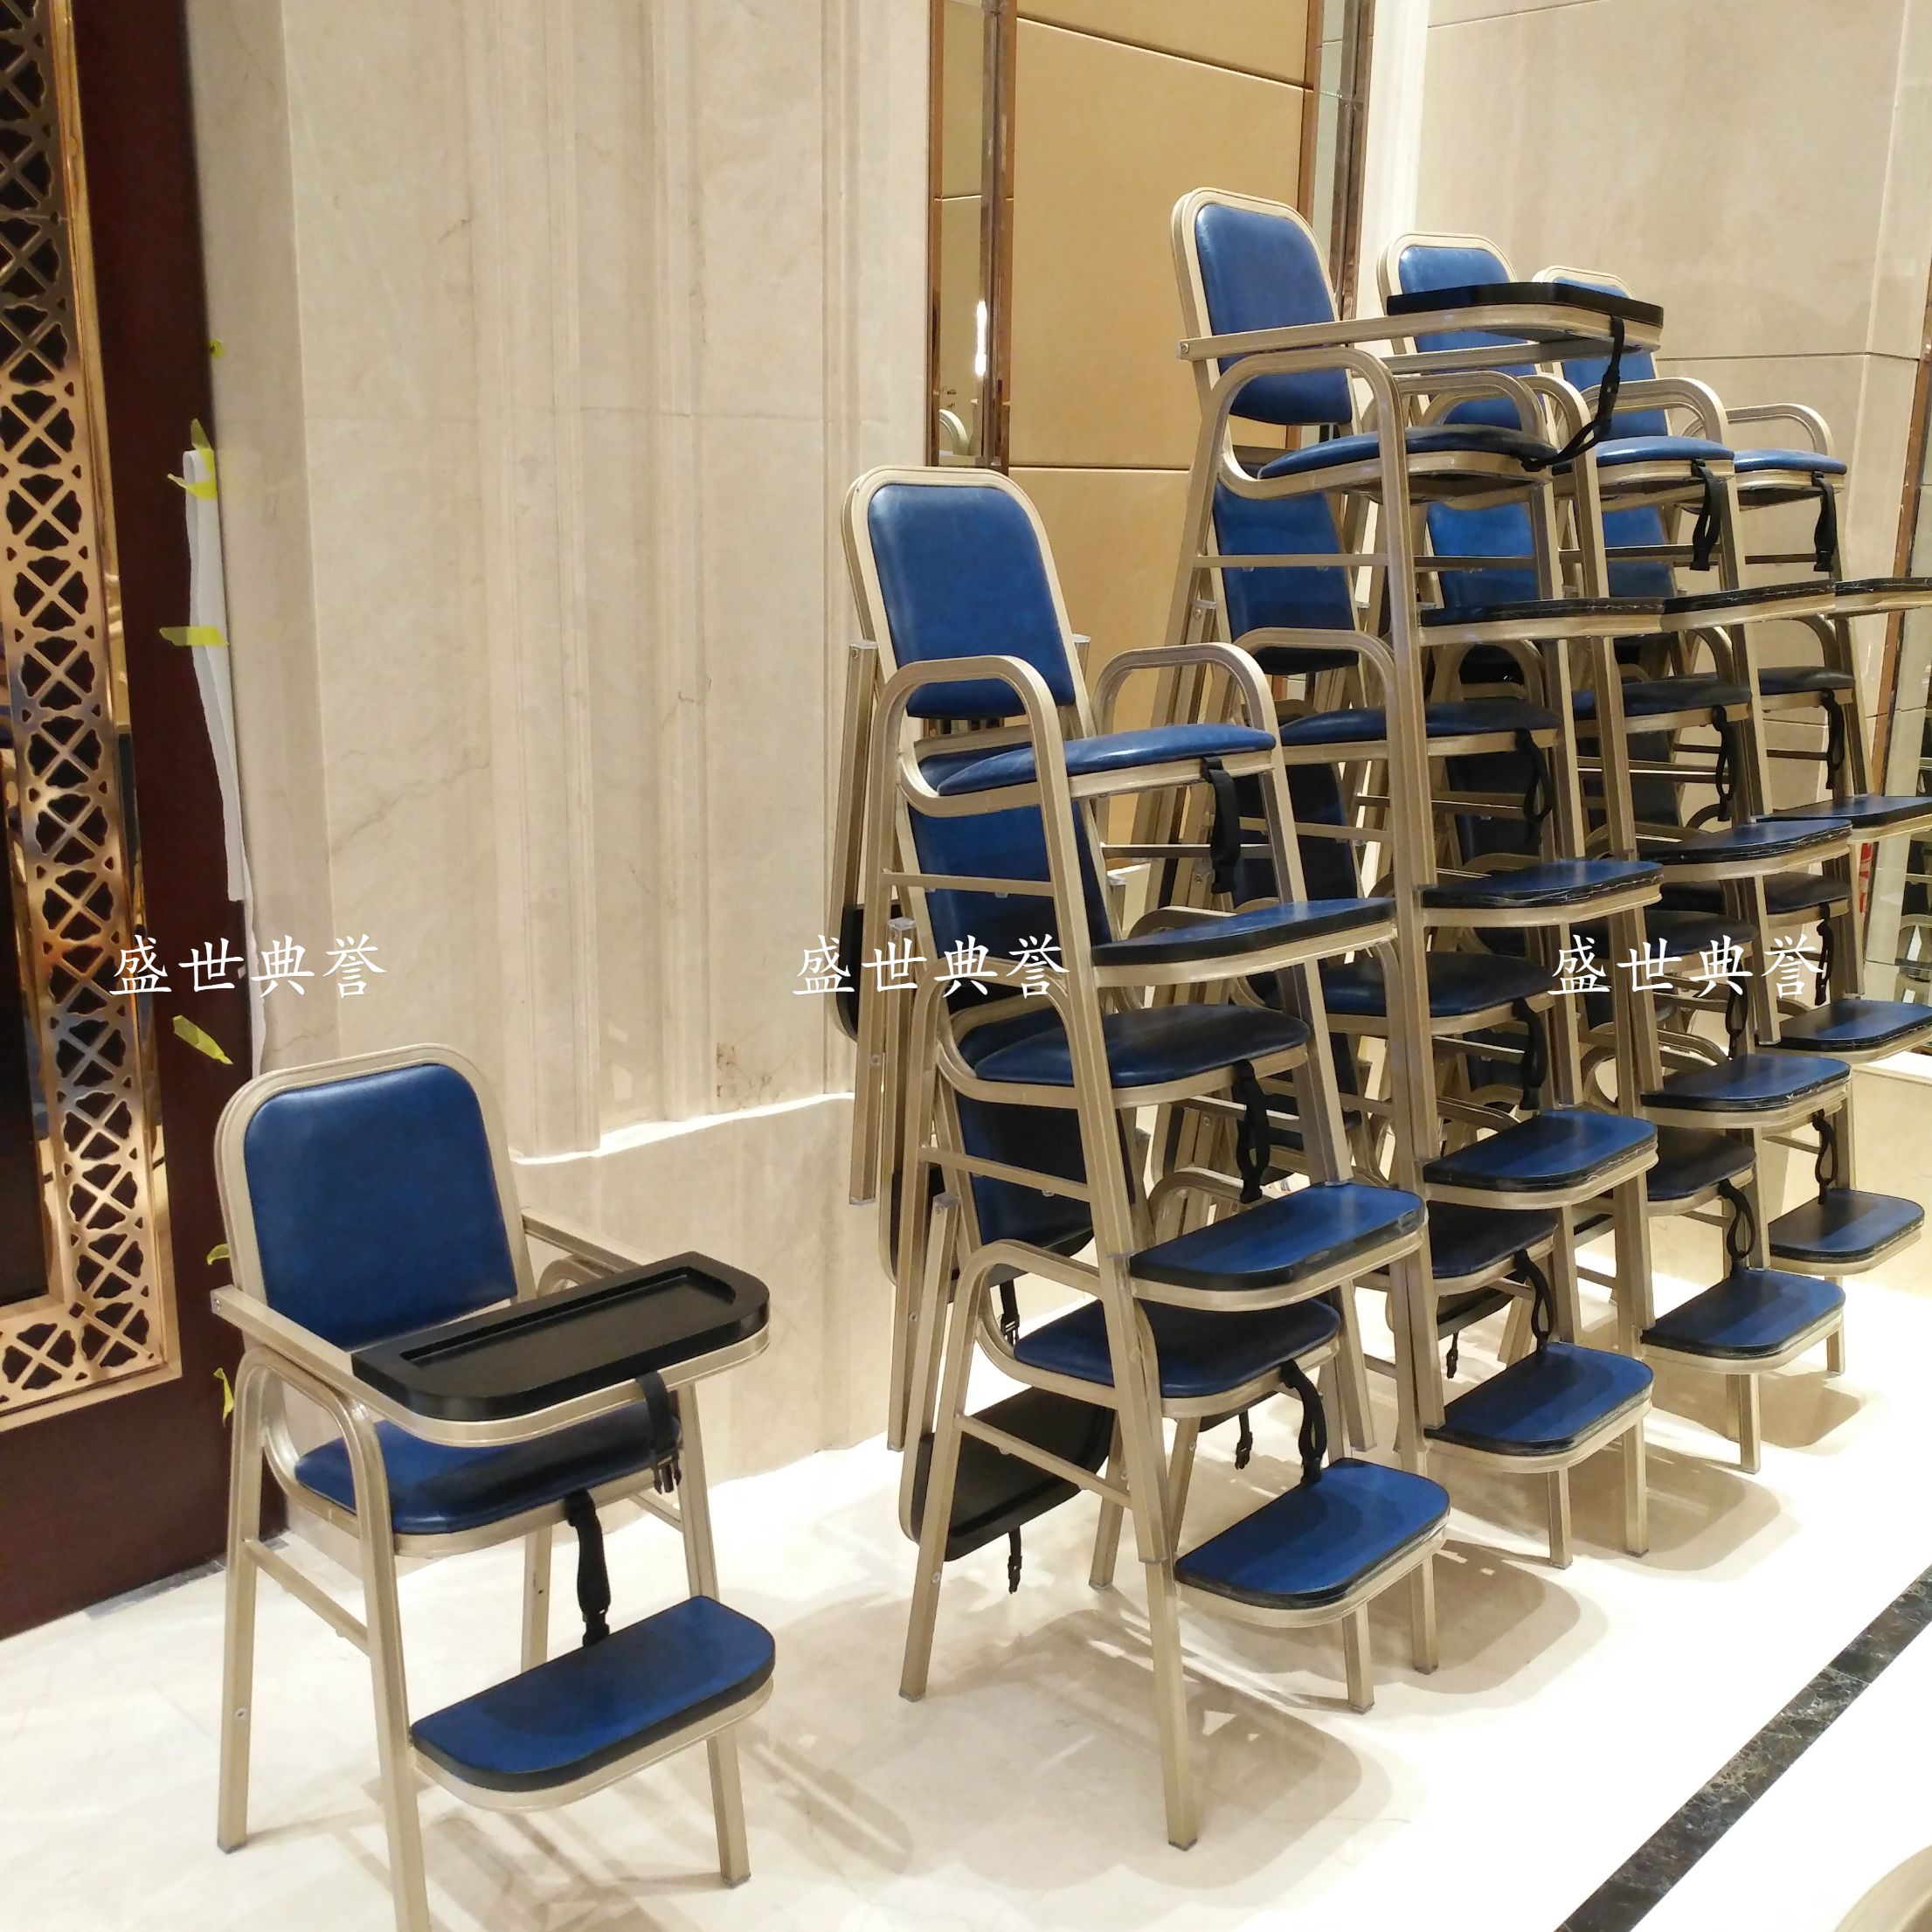 上海五星级酒店宴会厅铝合金宝宝椅 餐厅包厢儿童餐椅 贝贝椅BB椅产品图